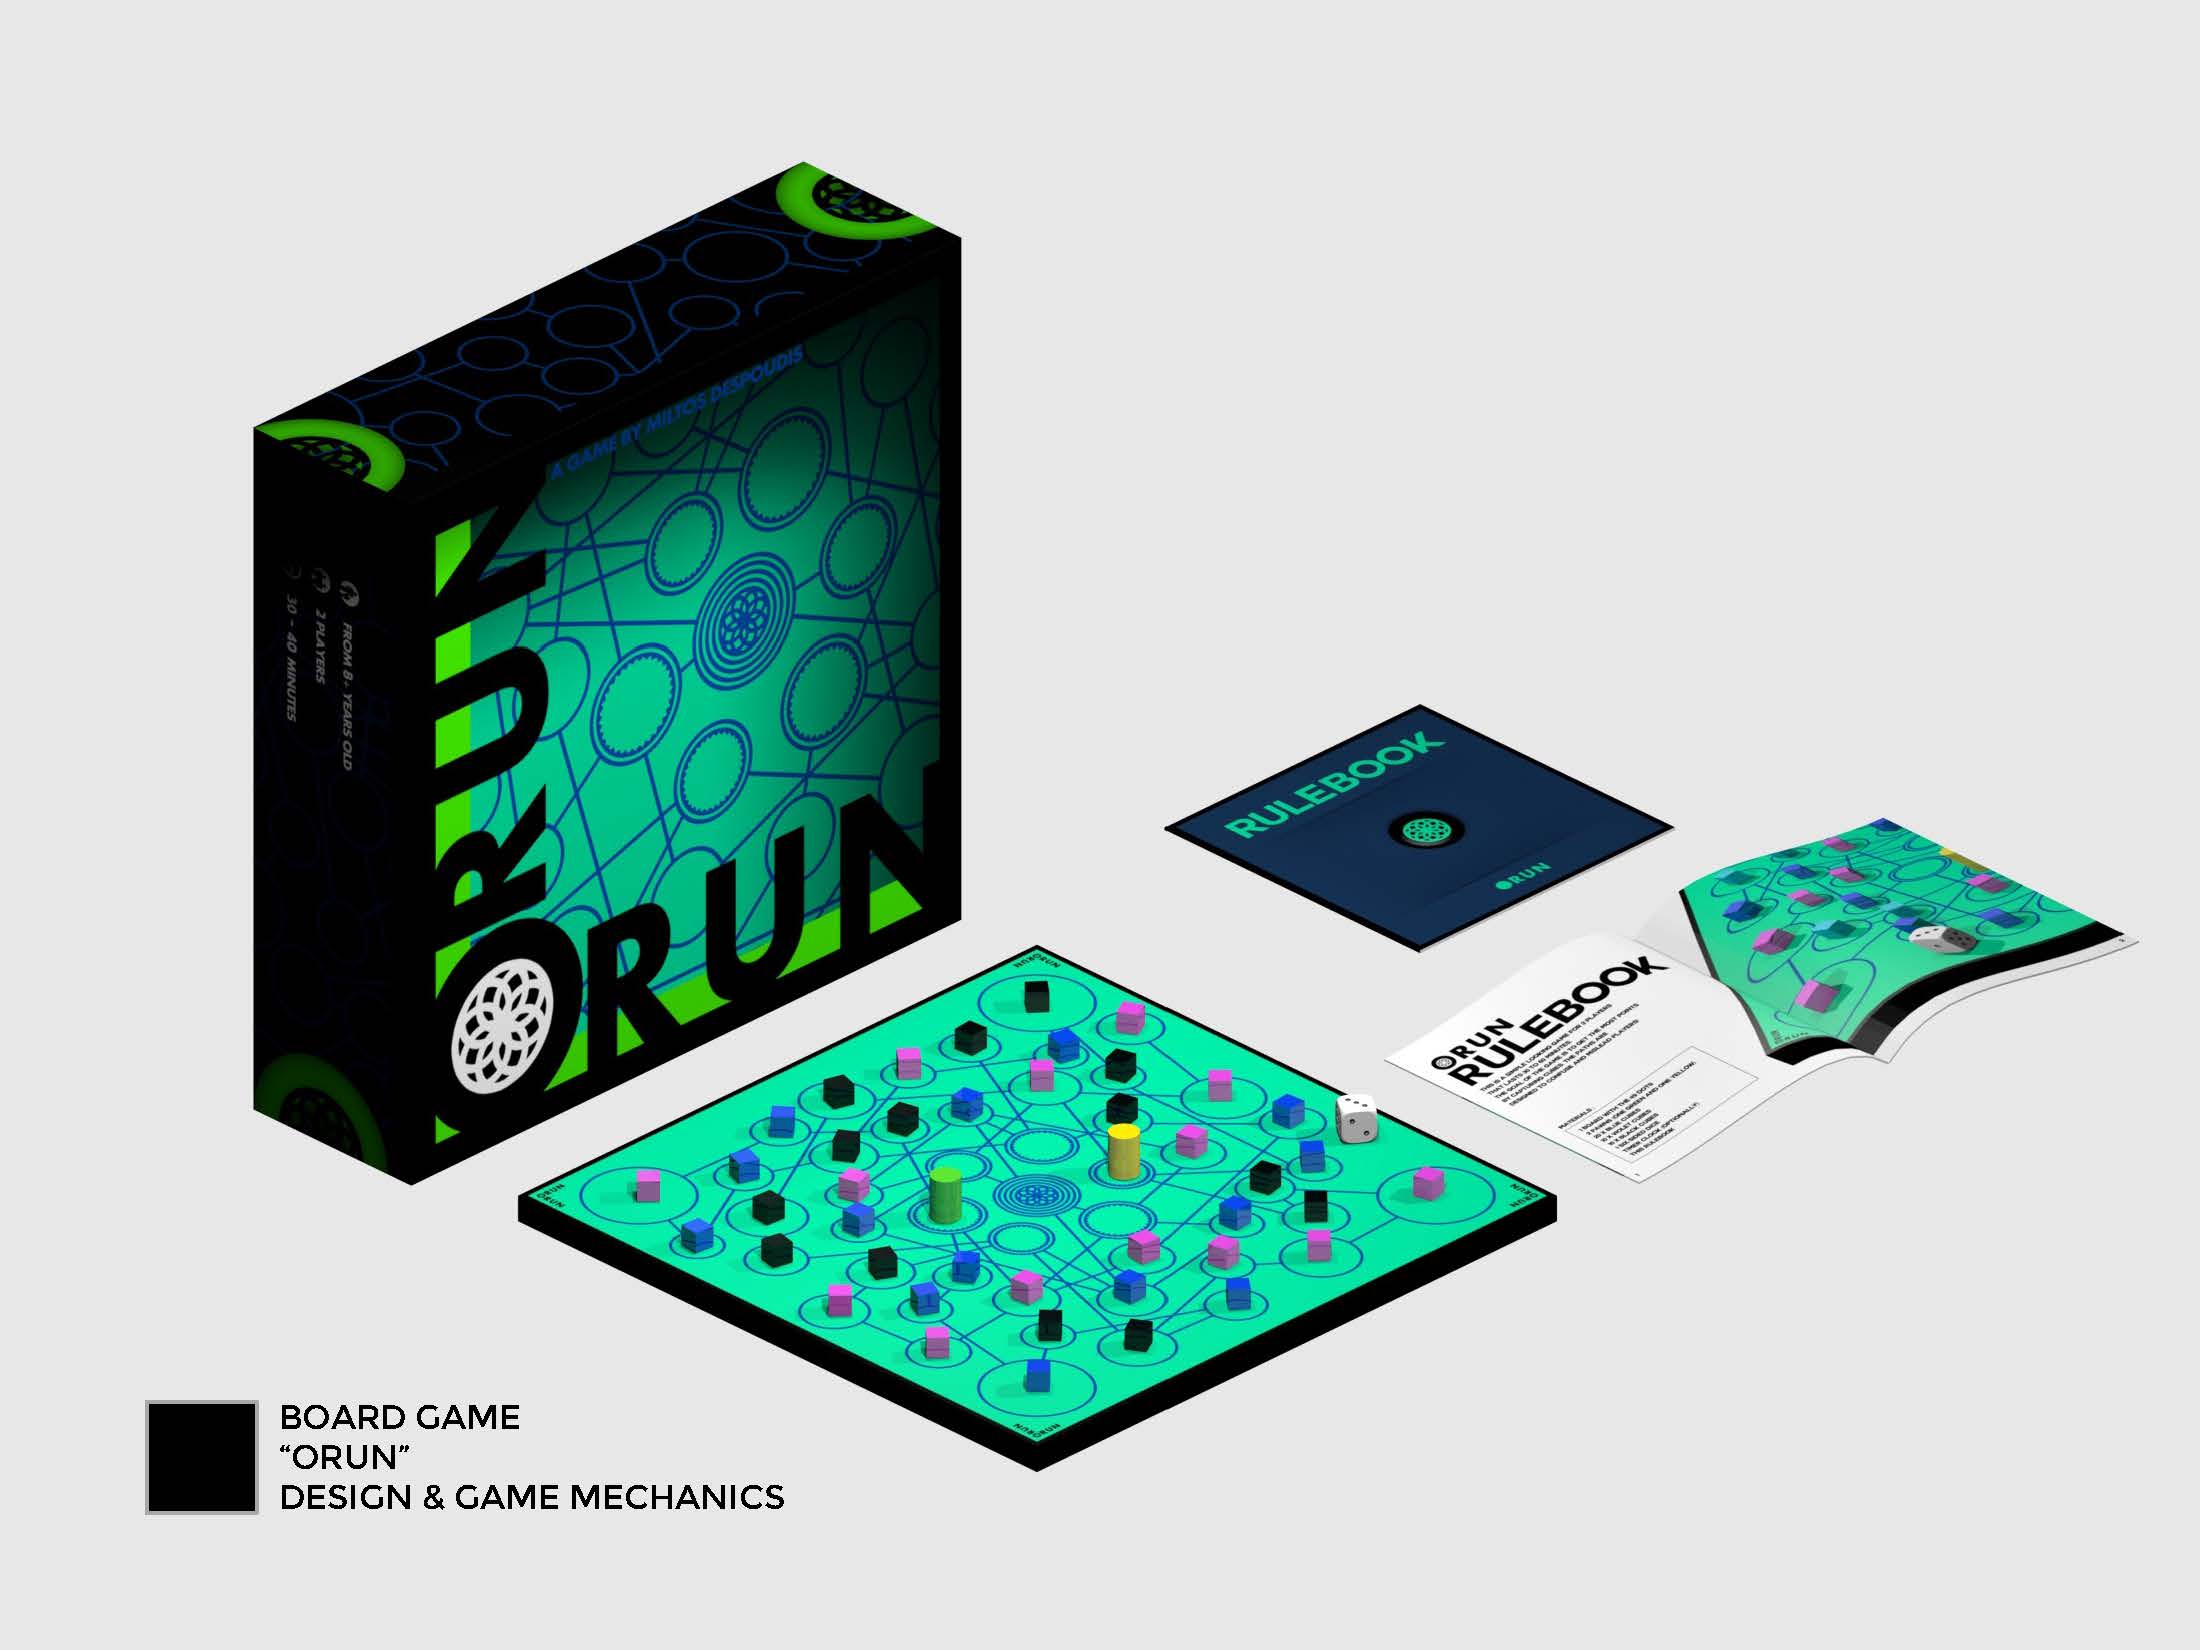 Orun Board Game